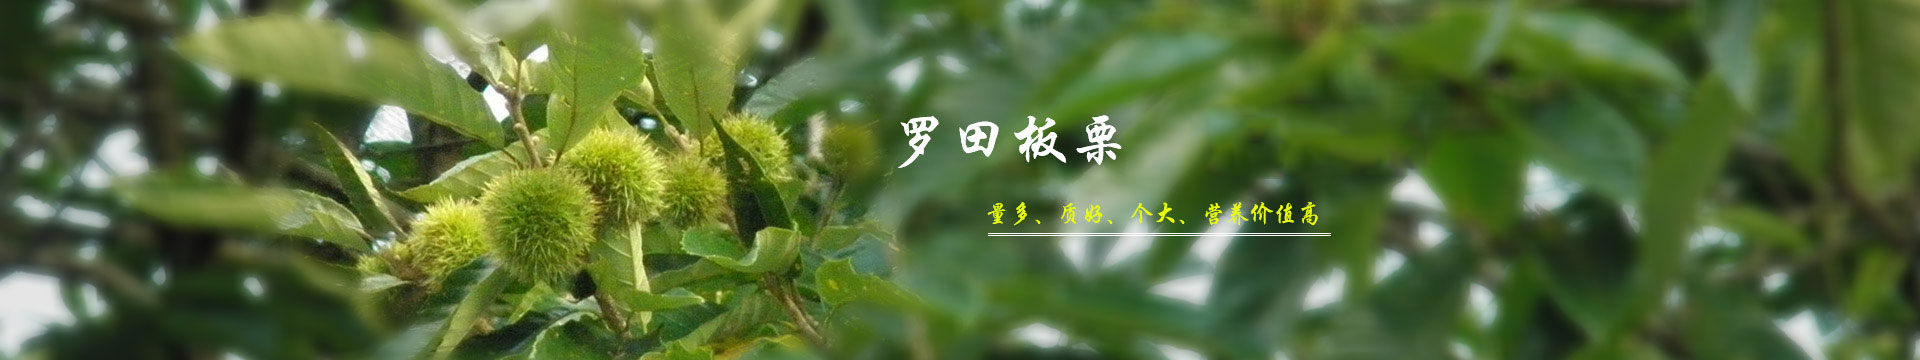 湖北板栗_板栗文化banner